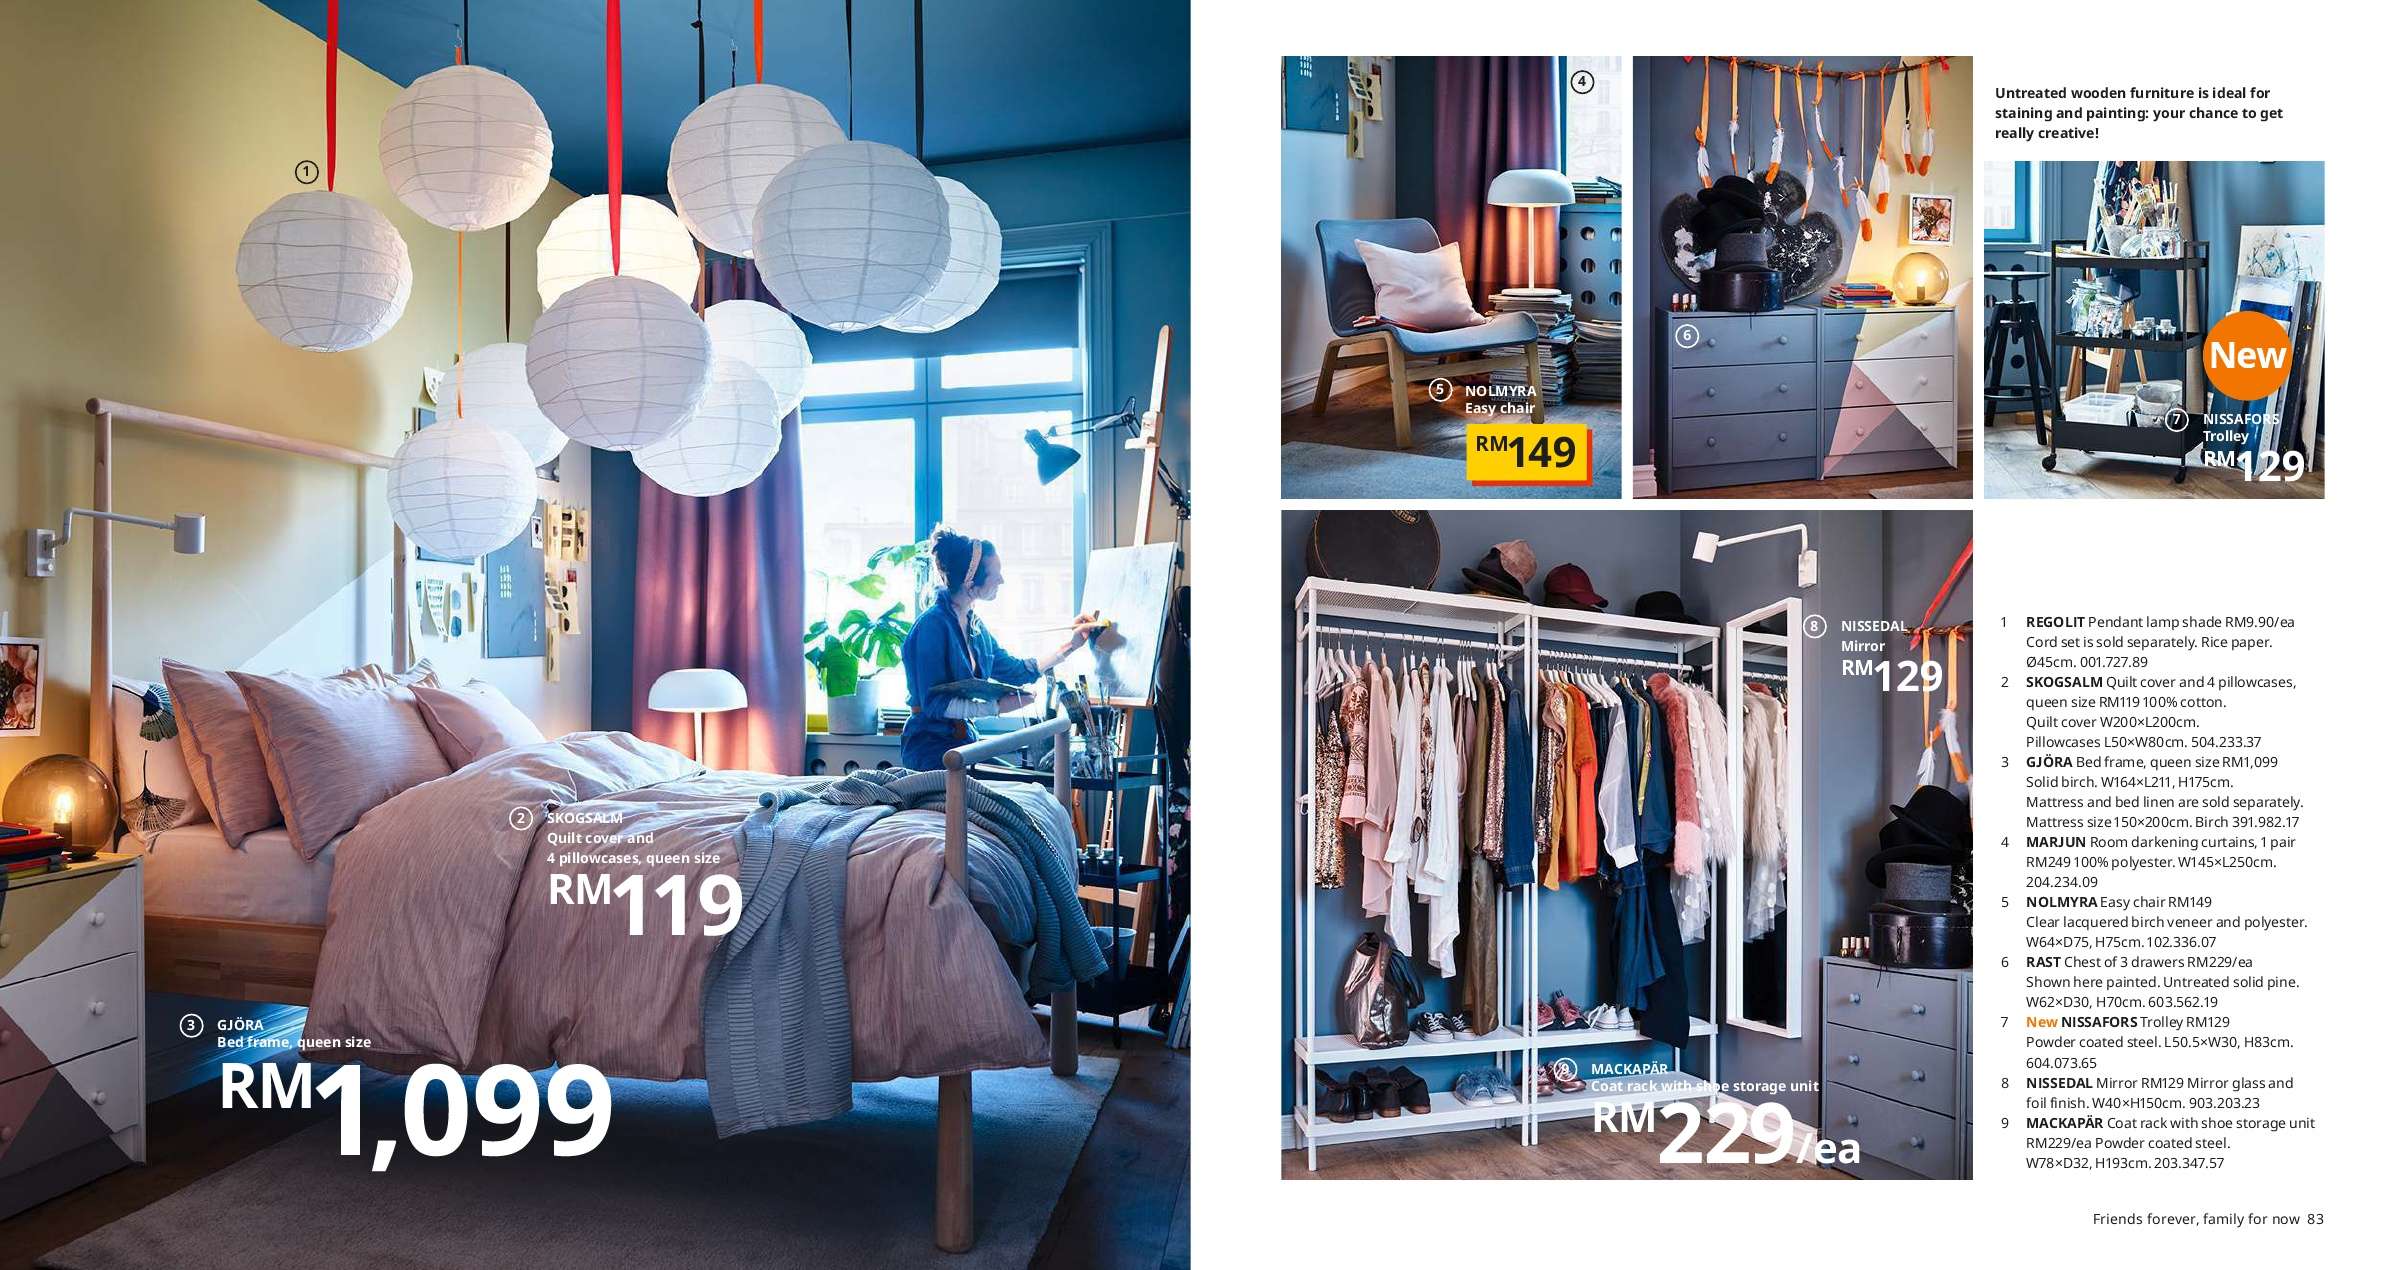 Ikea Malaysia 2020 Catalogue (16 Sep 2019 - 31 Jul 2020)